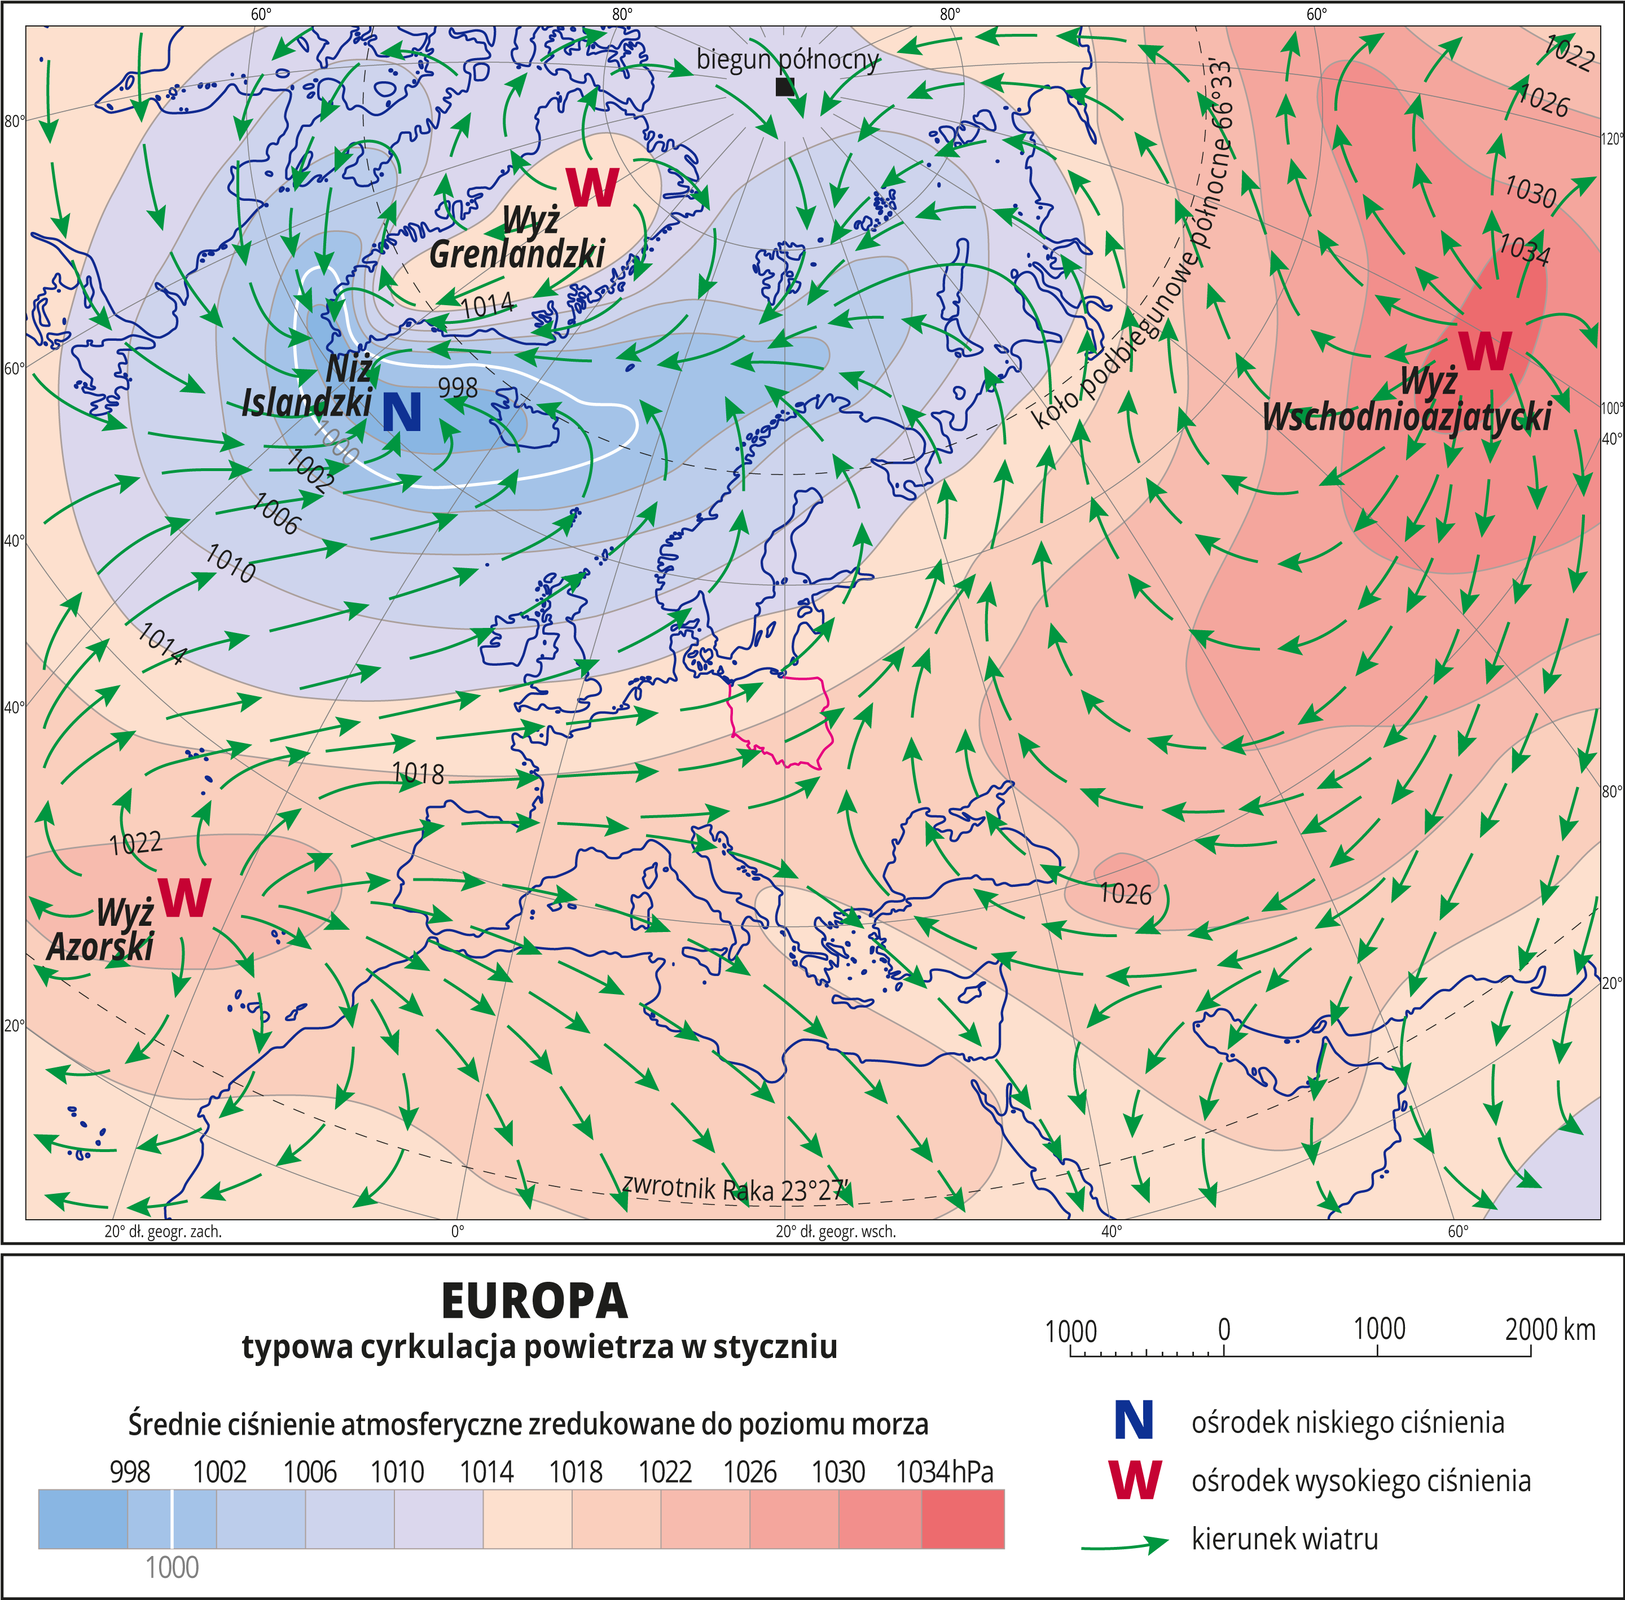 Ilustracja przedstawia mapę Europy i obrazuje typową cyrkulację powietrza styczniu. Na mapie kolorami zaznaczono wartości ciśnienia atmosferycznego zredukowane do poziomu morza. Odcienie koloru pomarańczowego oznaczają obszary o wysokim ciśnieniu (przeważają na mapie), odcienie koloru niebieskiego oznaczają obszary o niskim ciśnieniu. Czerwonymi literami W opisano ośrodki wysokiego ciśnienia (Wyż Grenlandzki, Wyż Azorski, Wyż Wschodnioazjatycki), niebieską literą N opisano jedyny ośrodek niskiego ciśnienia (Niż Islandzki). Zielonymi strzałkami oznaczono kierunki wiatru (od wyżów do niżu). Na mapie opisano izobary co cztery hektopaskale. Najniższa wartość wynosi dziewięćset dziewięćdziesiąt osiem hektopaskali, najwyższa wartość wynosi tysiąc trzydzieści cztery hektopaskale. Mapa pokryta jest równoleżnikami i południkami. Dookoła mapy w białej ramce opisano współrzędne geograficzne co dwadzieścia stopni. Na dole mapy w legendzie opisano kolory i znaki użyte na mapie.